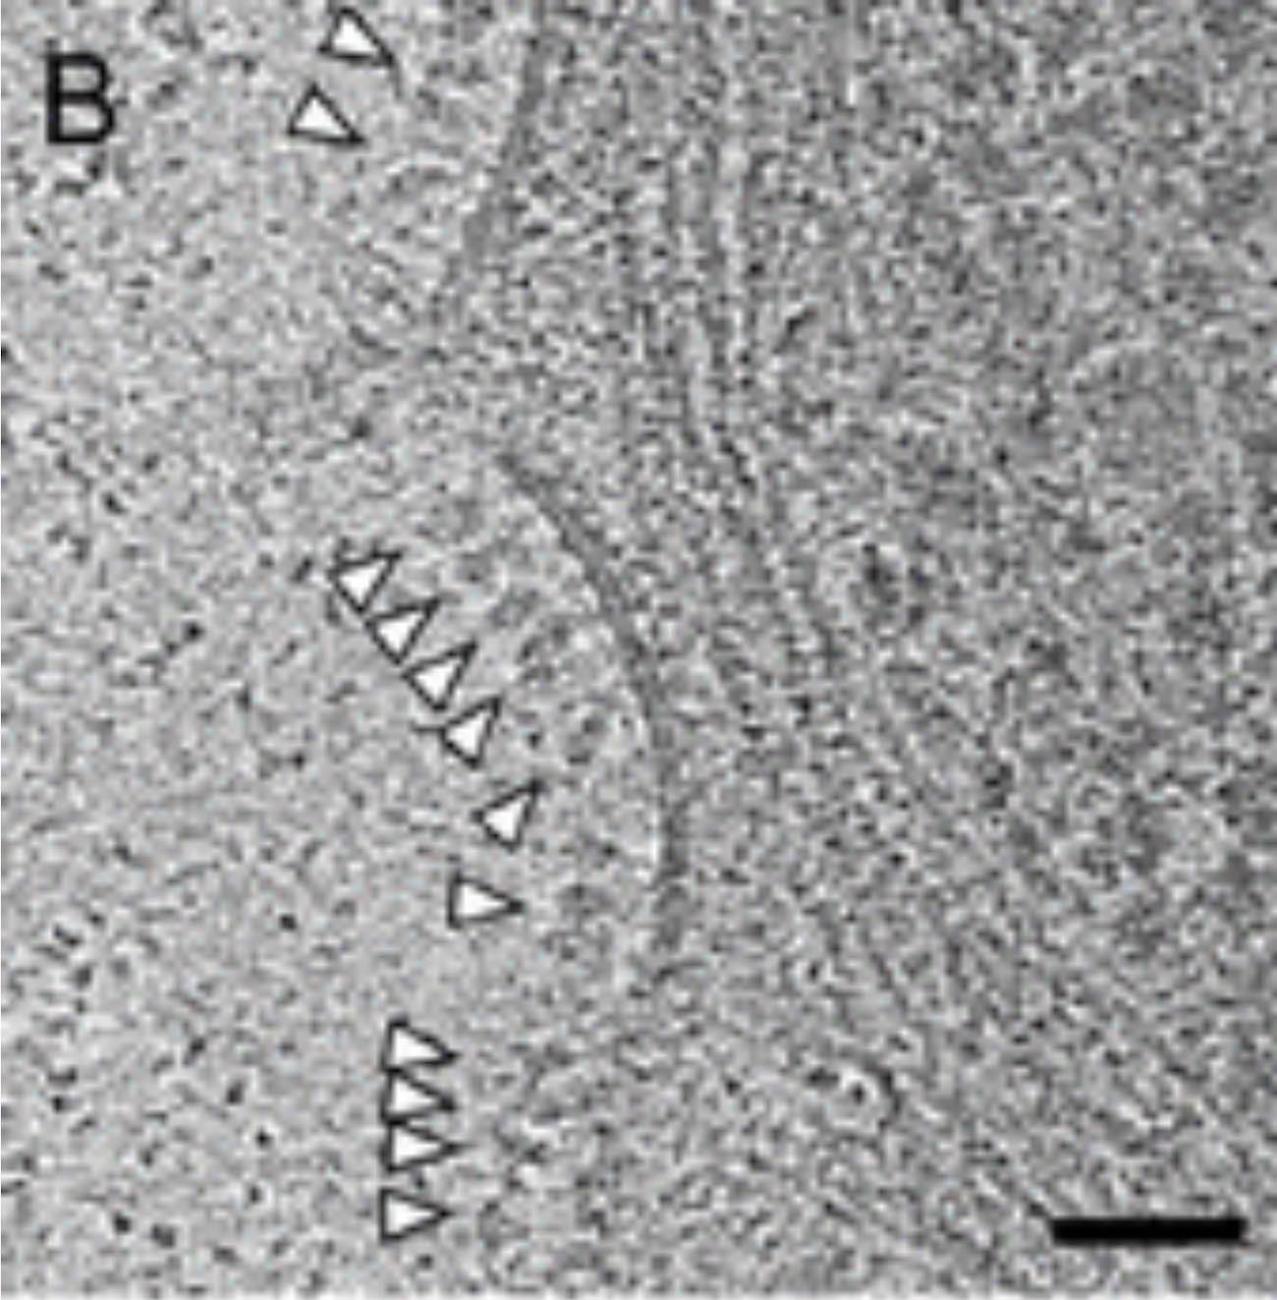 Protéines de pointe à la surface des cellules à la suite du vaccin Astrazeneca